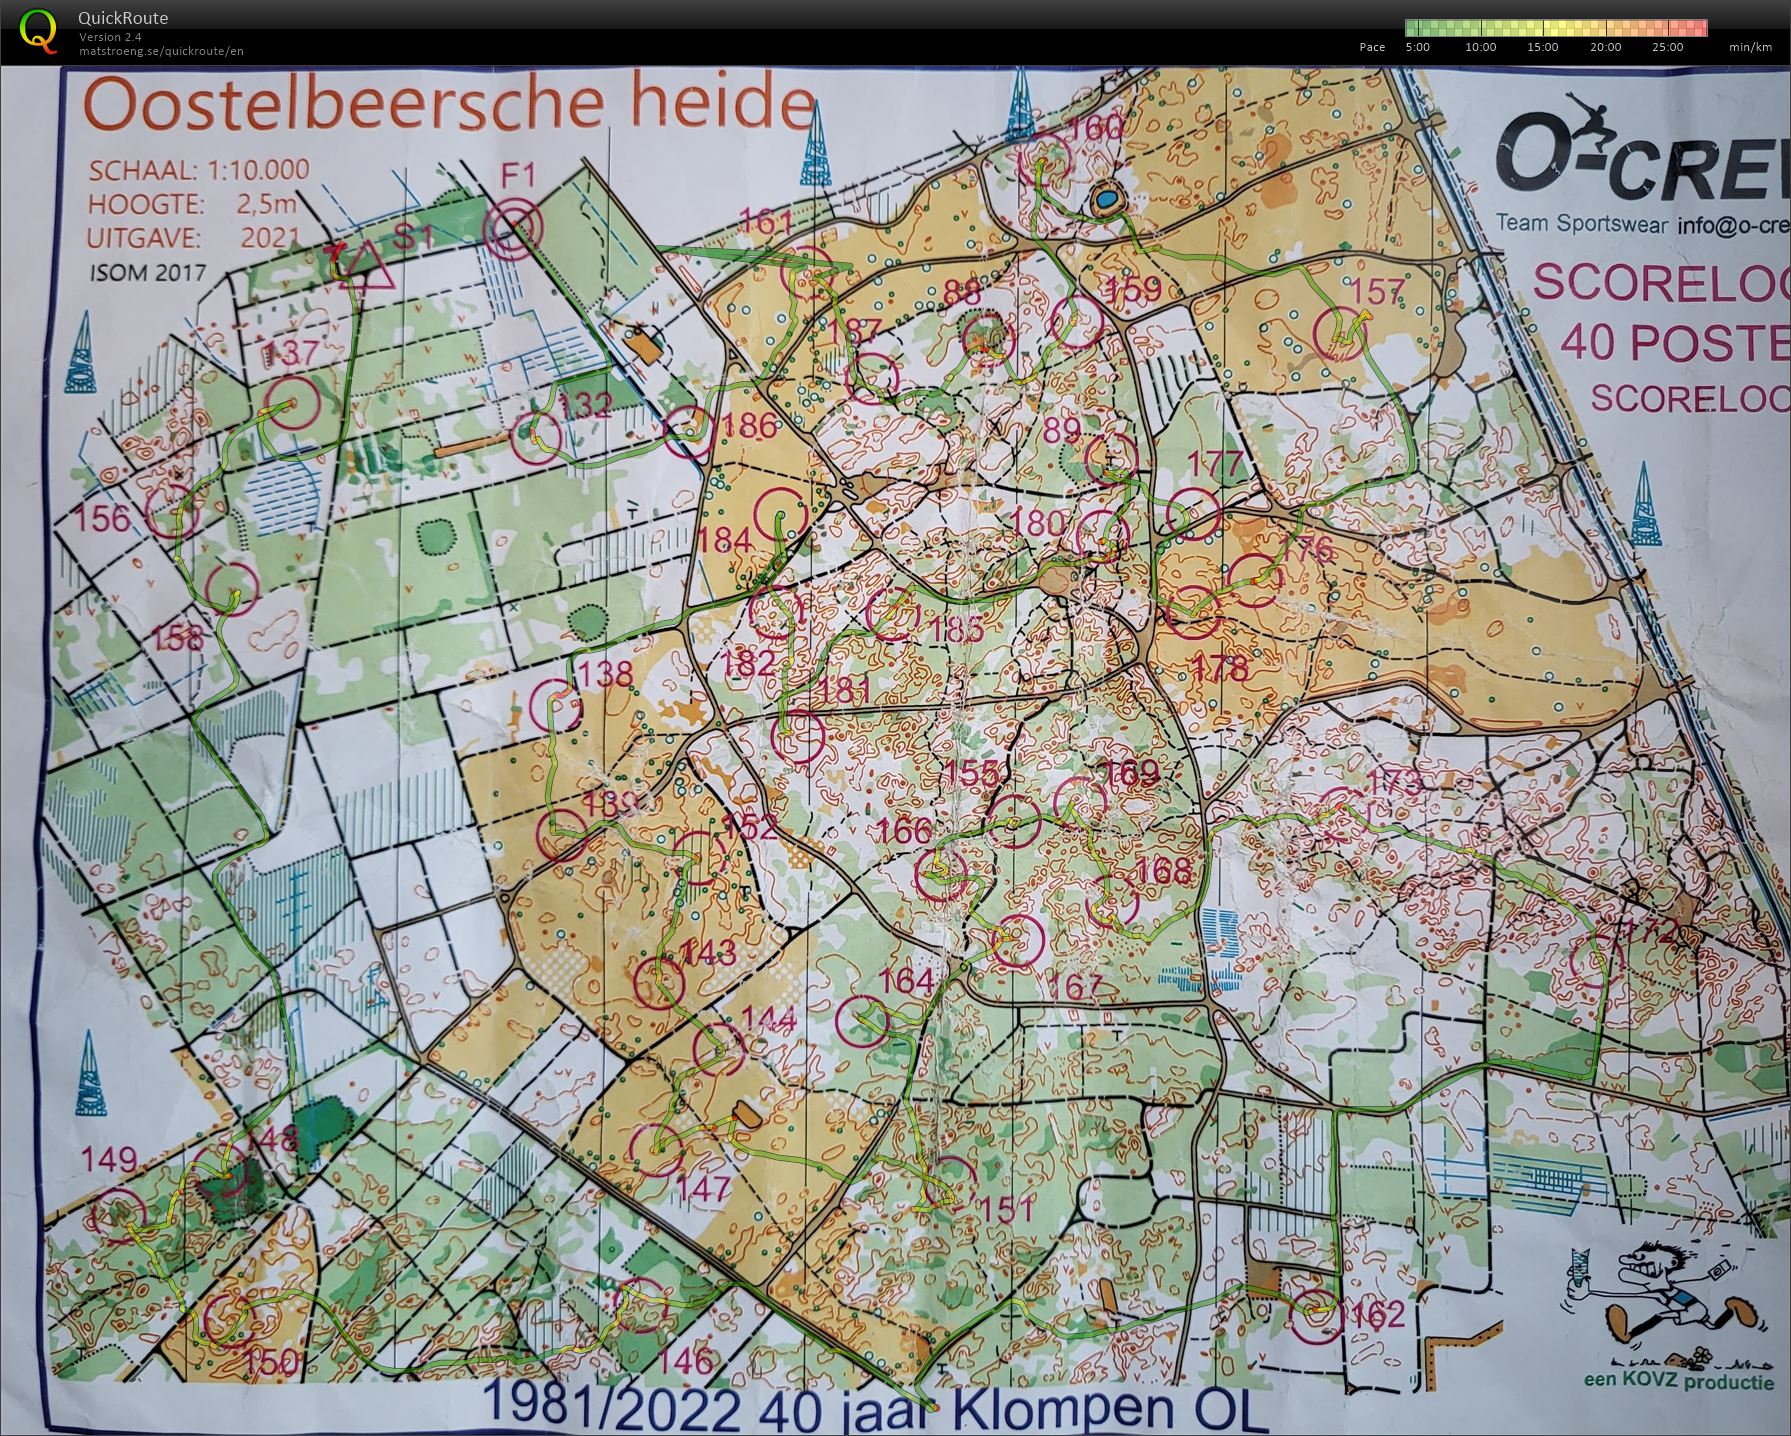 Oostelbeersche Heide (06/11/2022)